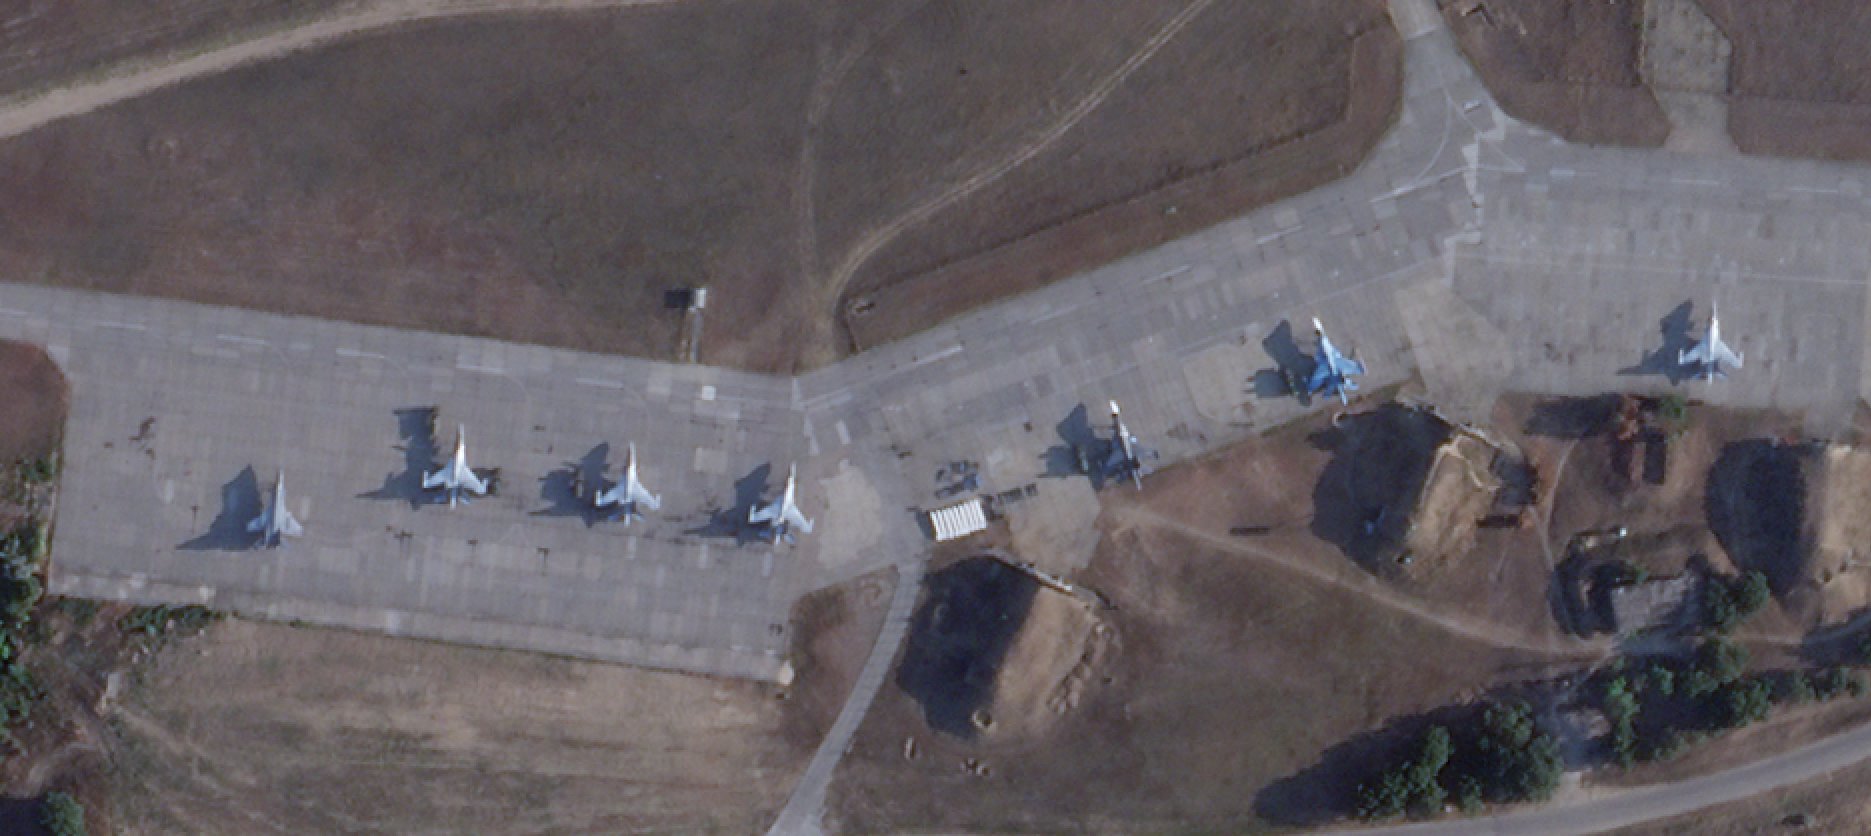 Судя по спутниковым снимкам, на аэродроме Бельбек под Севастополем повреждений нет